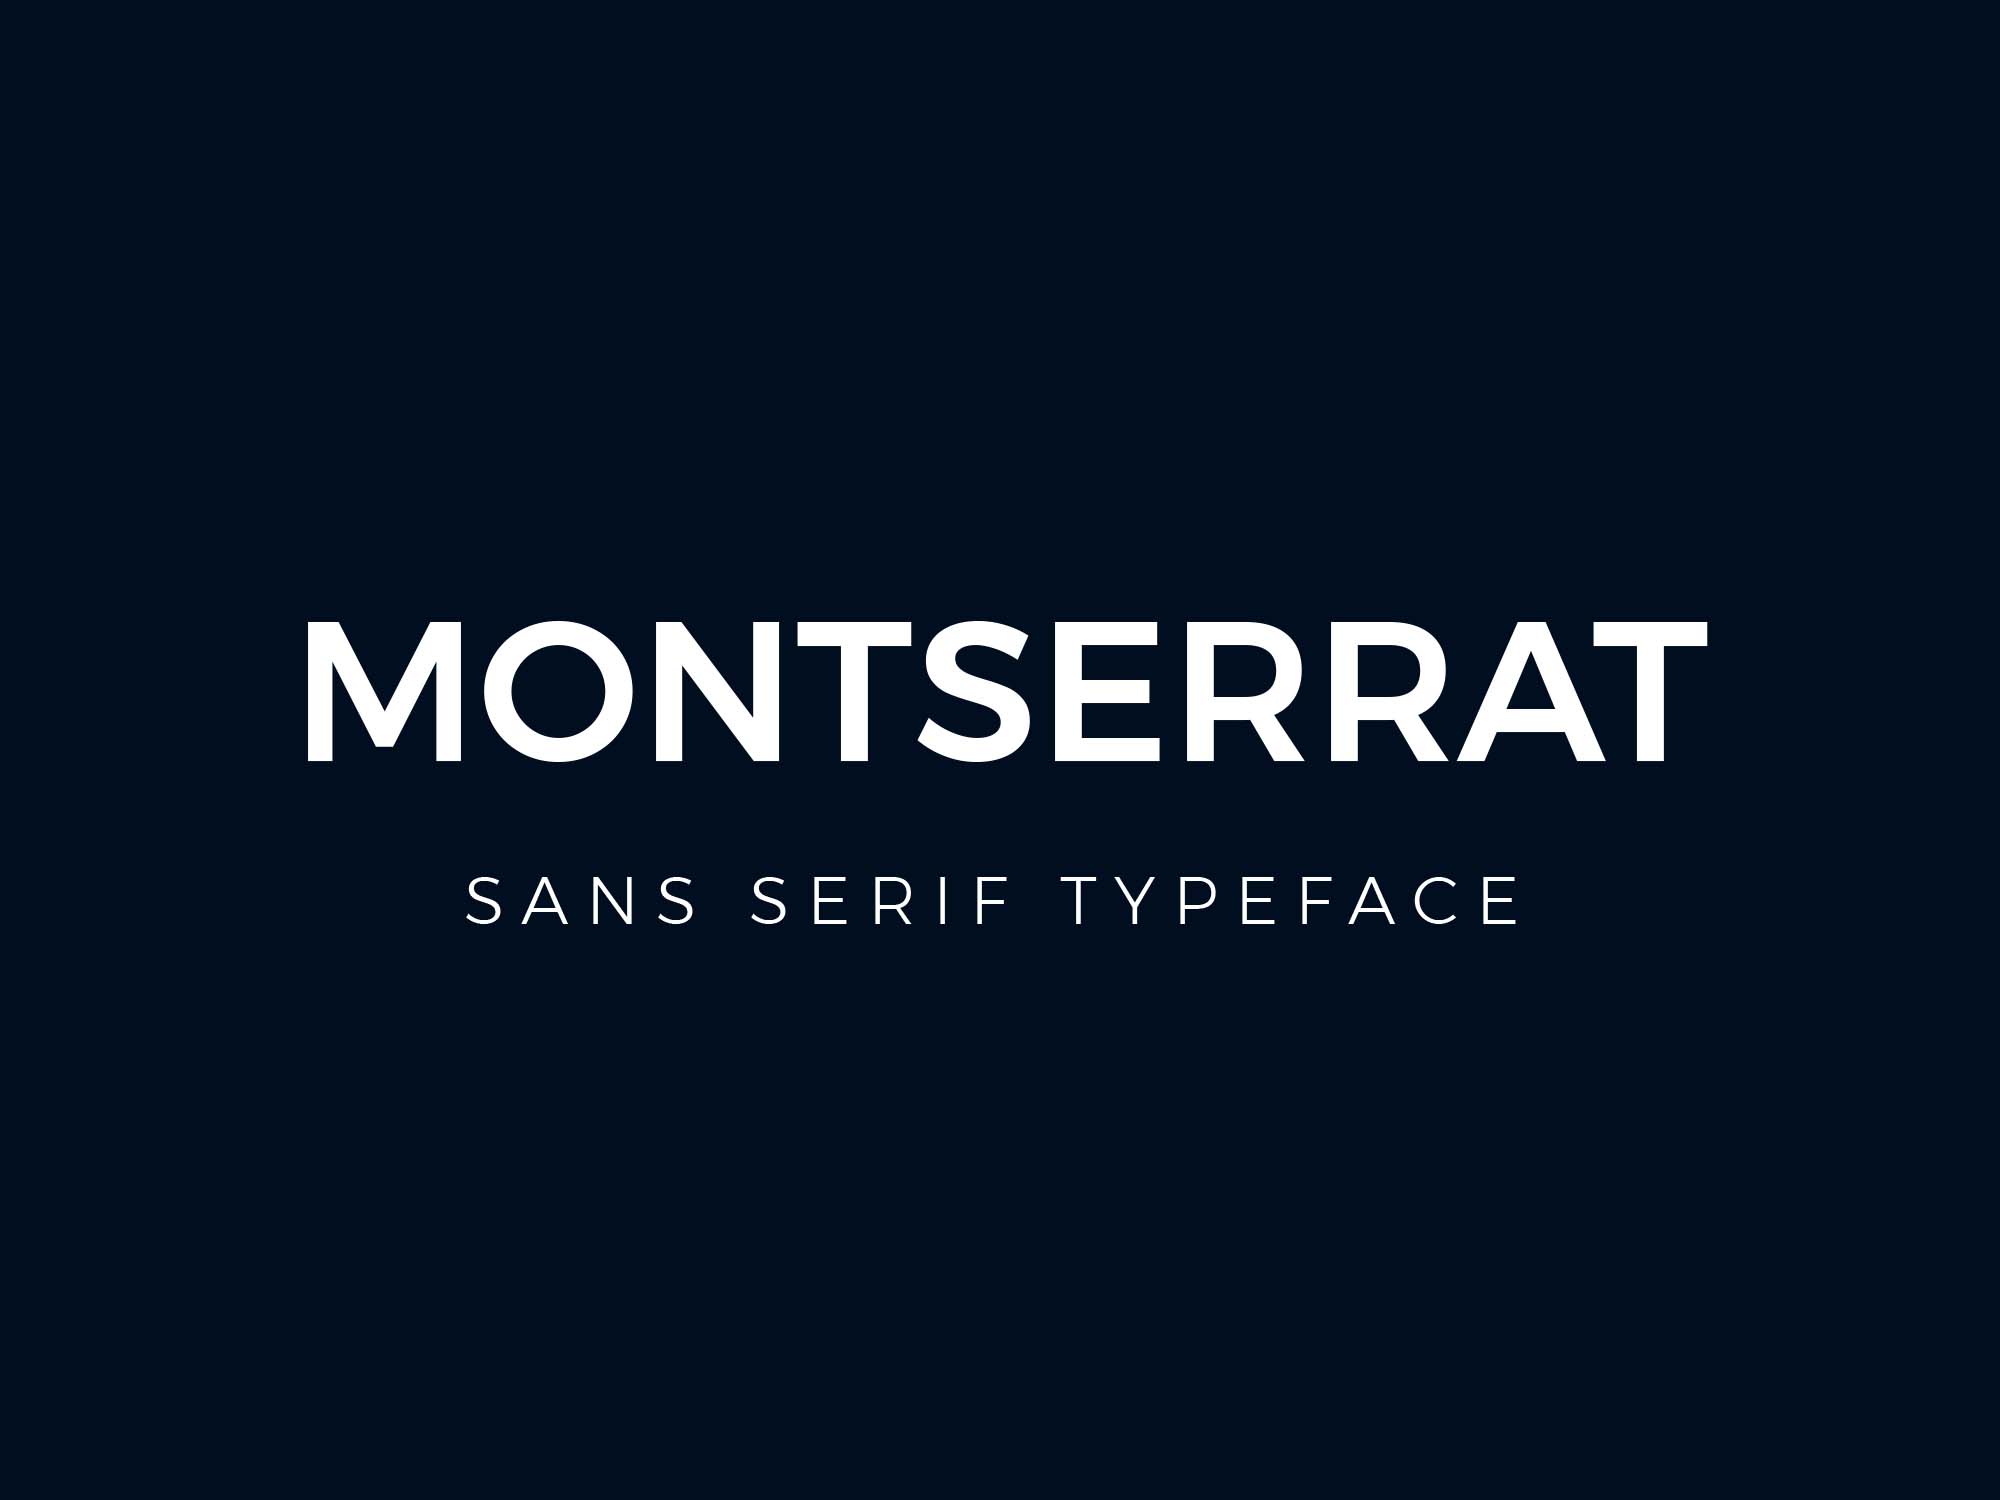 A free sans serif typeface